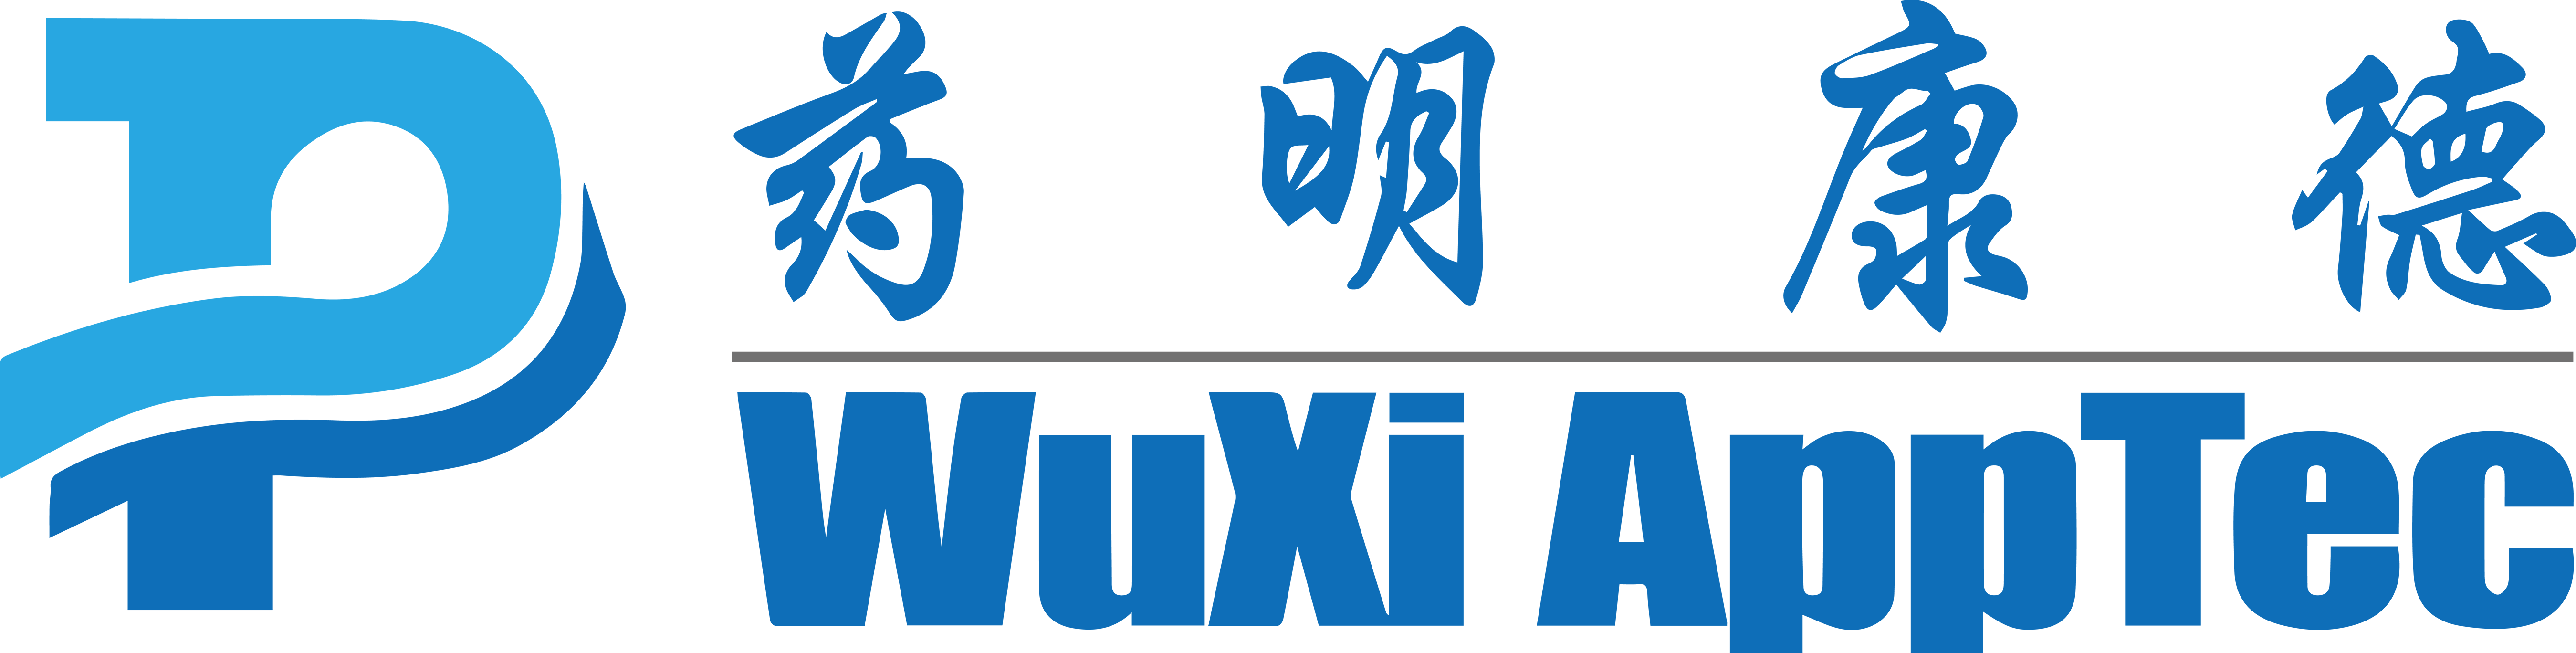 Wuxi AppTec Logo